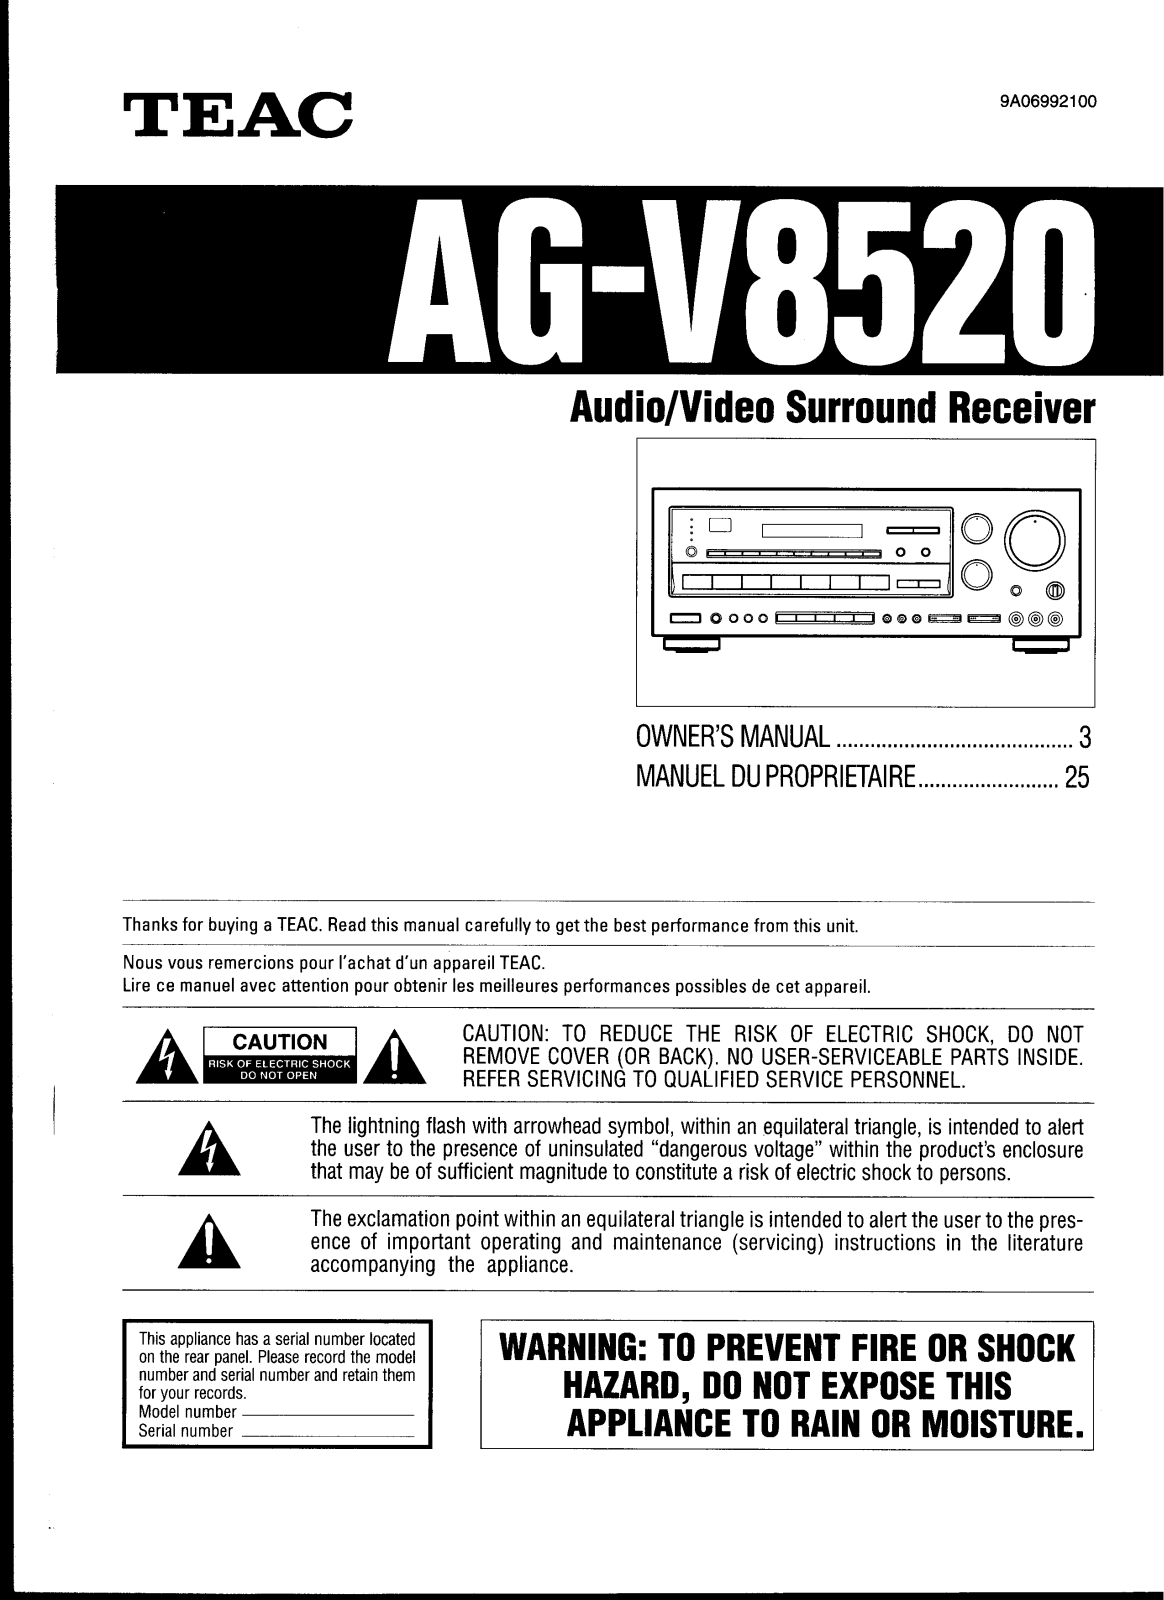 Teac AG-V8520 Manual